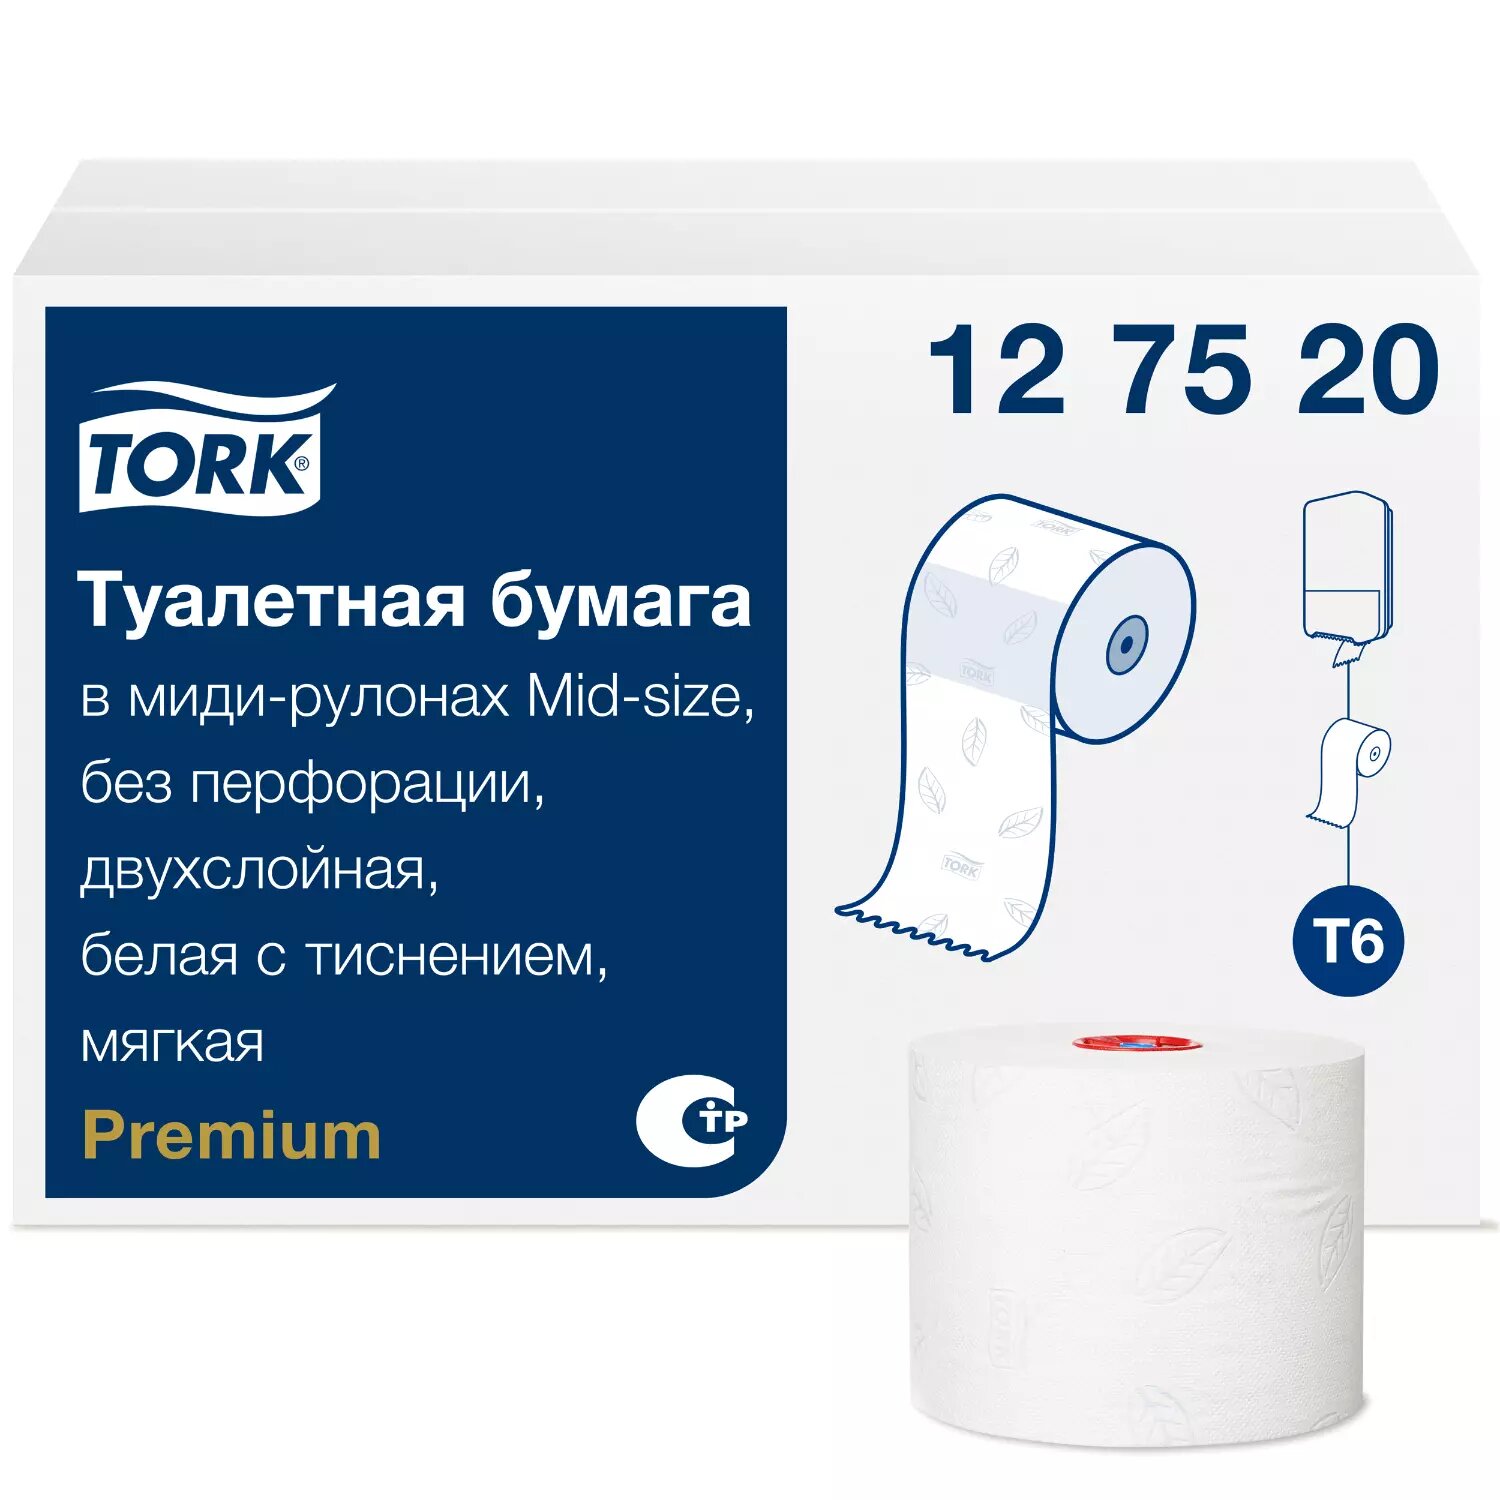    Tork Premium 127520, 1 